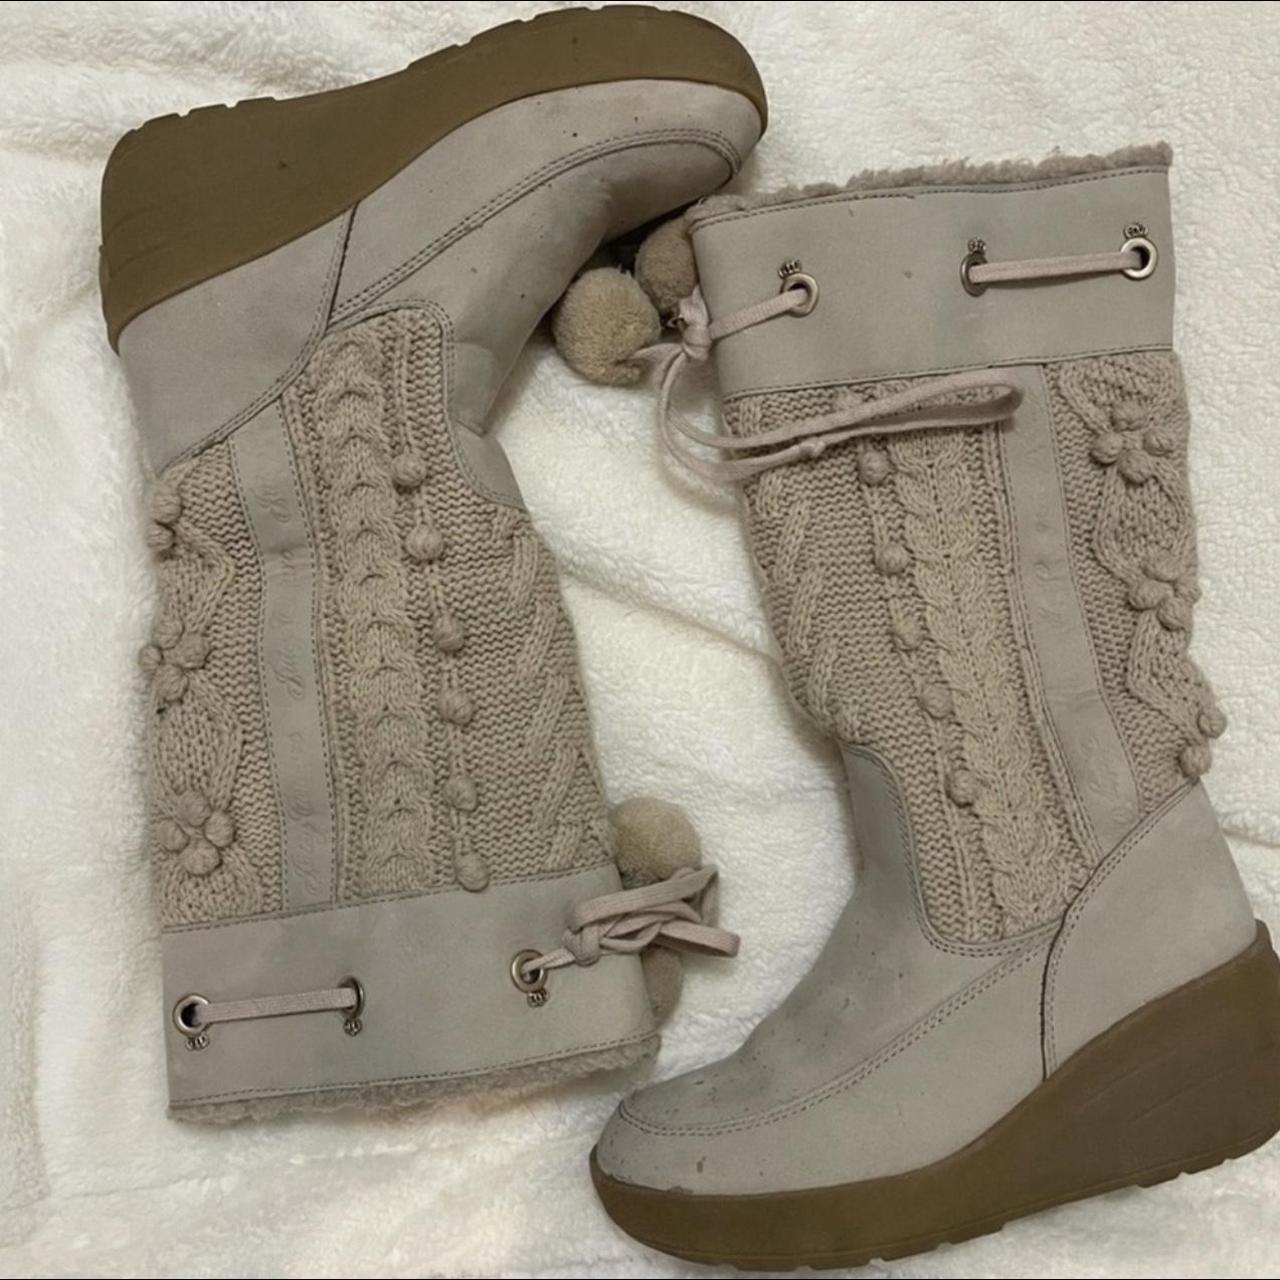 Juicy Couture Y2K Suede Snowbunny Boots in Camel sz... - Depop